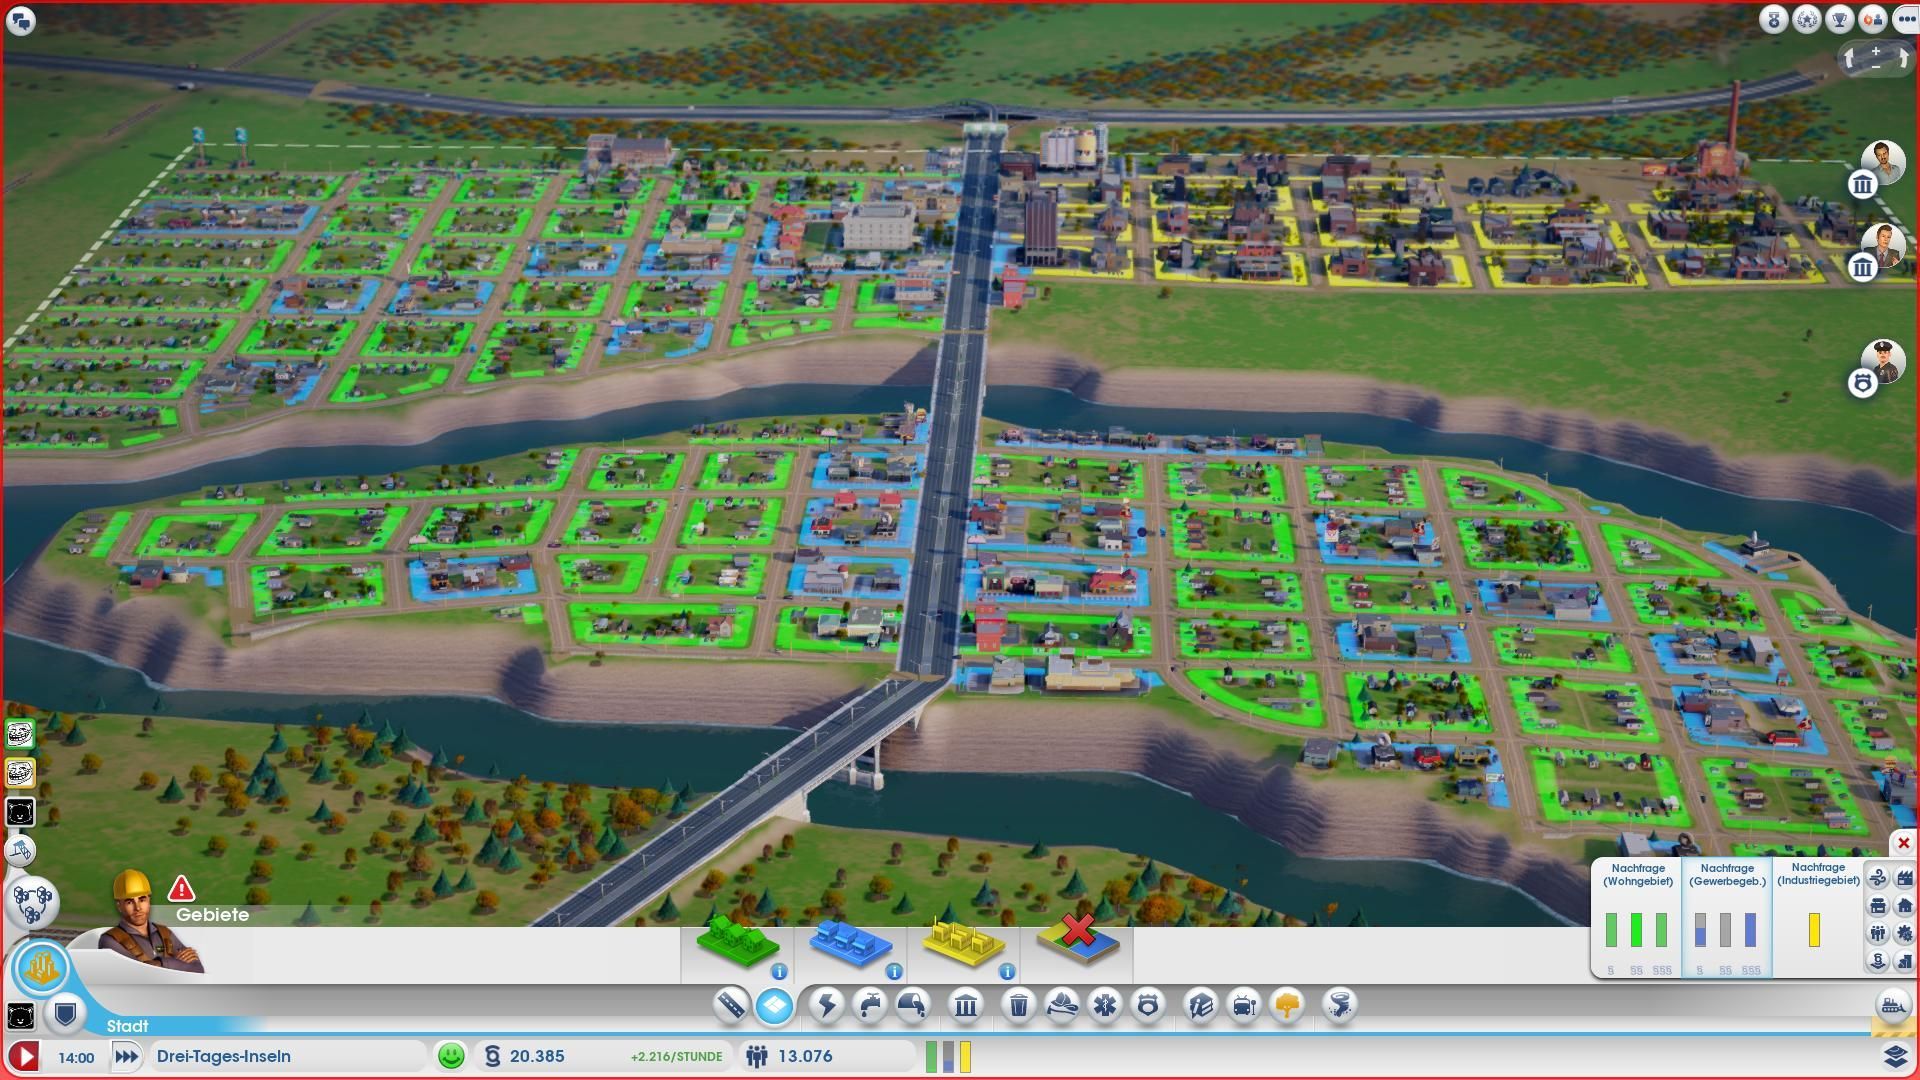 Является ли Cities Skylines 2 многопользовательской игрой?